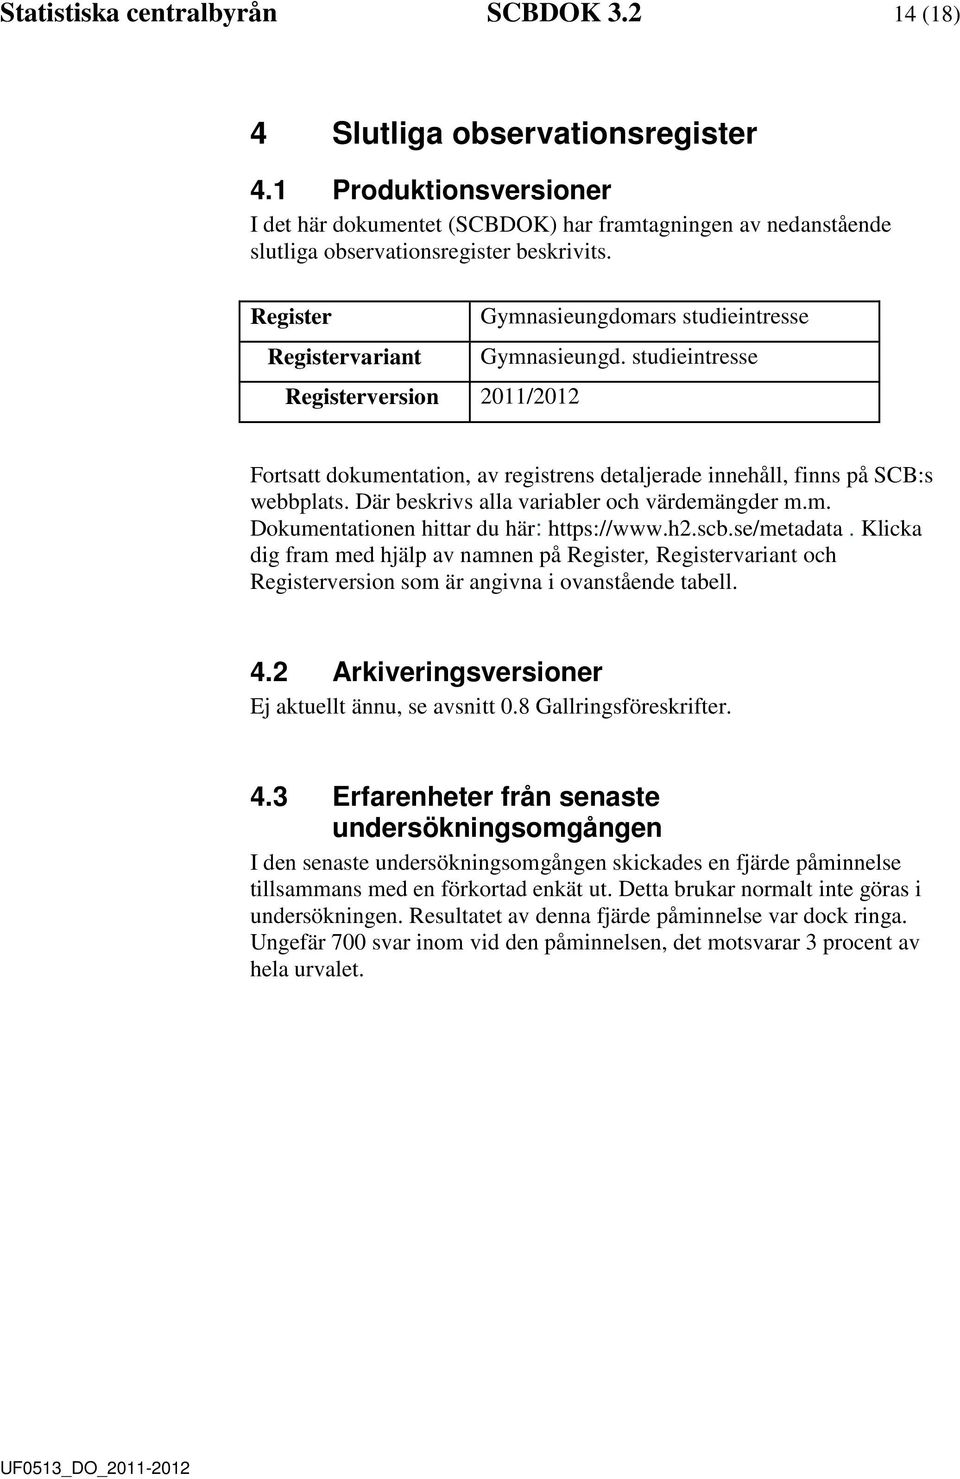 Register Registervariant Registerversion 2011/2012 Gymnasieungomars stuieintresse Gymnasieung. stuieintresse Fortsatt okumentation, av registrens etaljerae innehåll, finns på SCB:s webbplats.